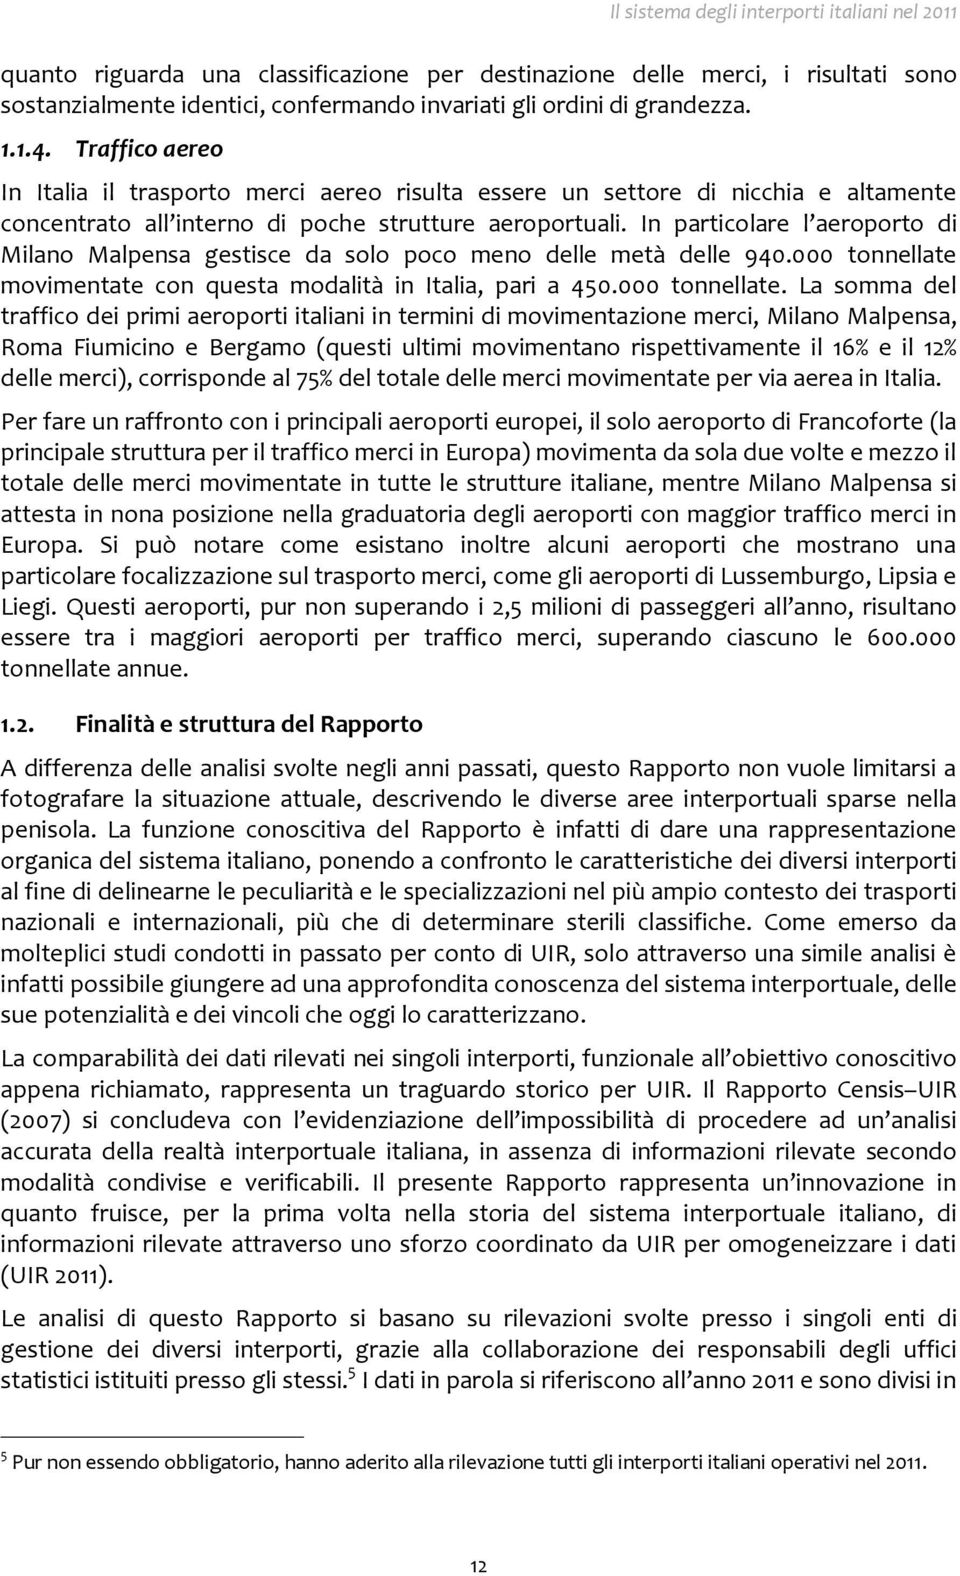 In particolare l aeroporto di Milano Malpensa gestisce da solo poco meno delle metà delle 940.000 tonnellate 